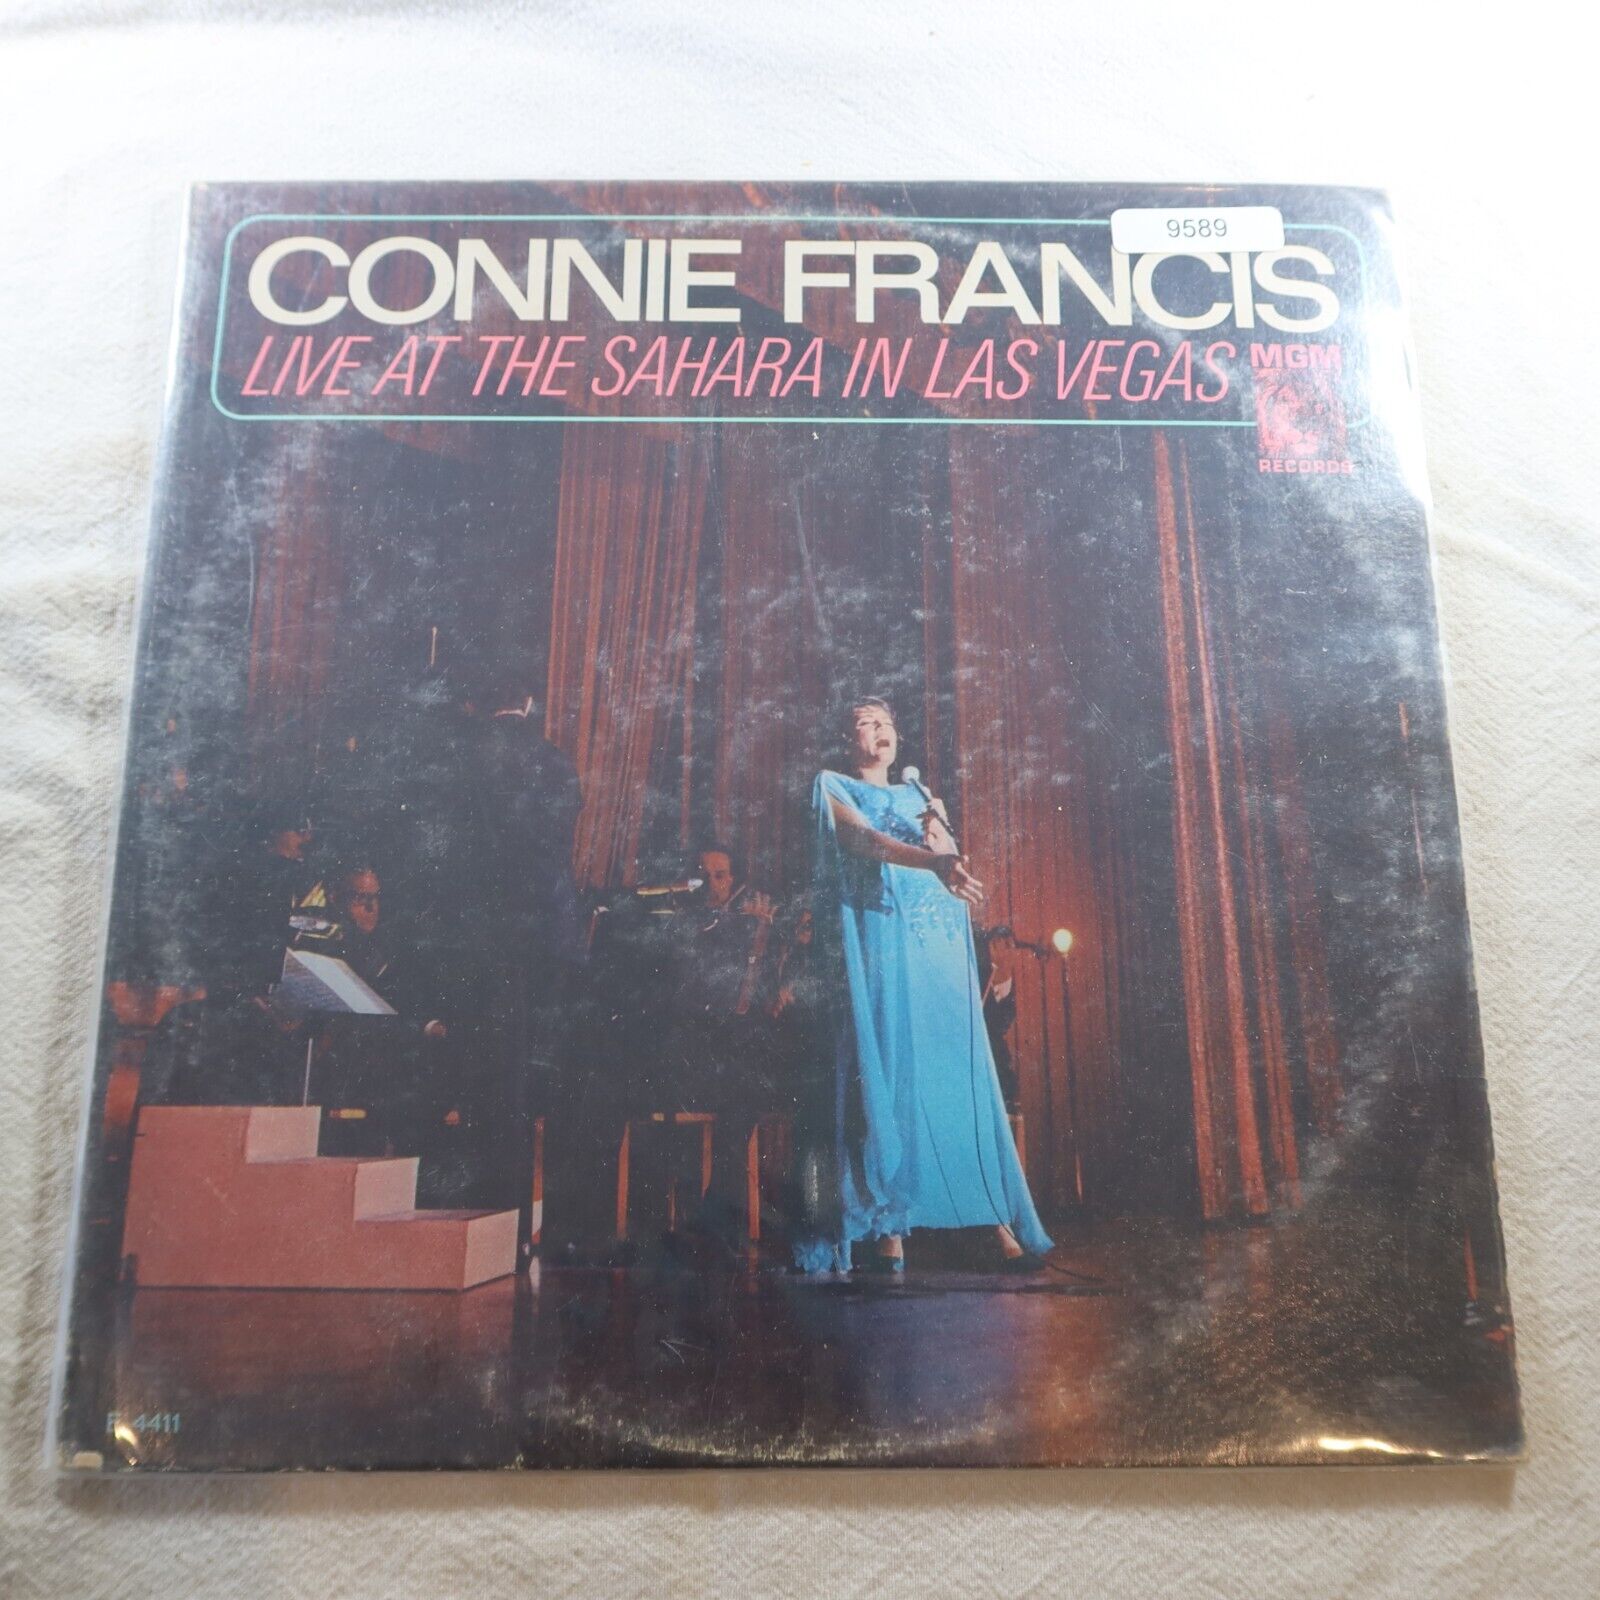 Connie Francis Live At The Sahara In Las Vegas   Record Album Vinyl LP